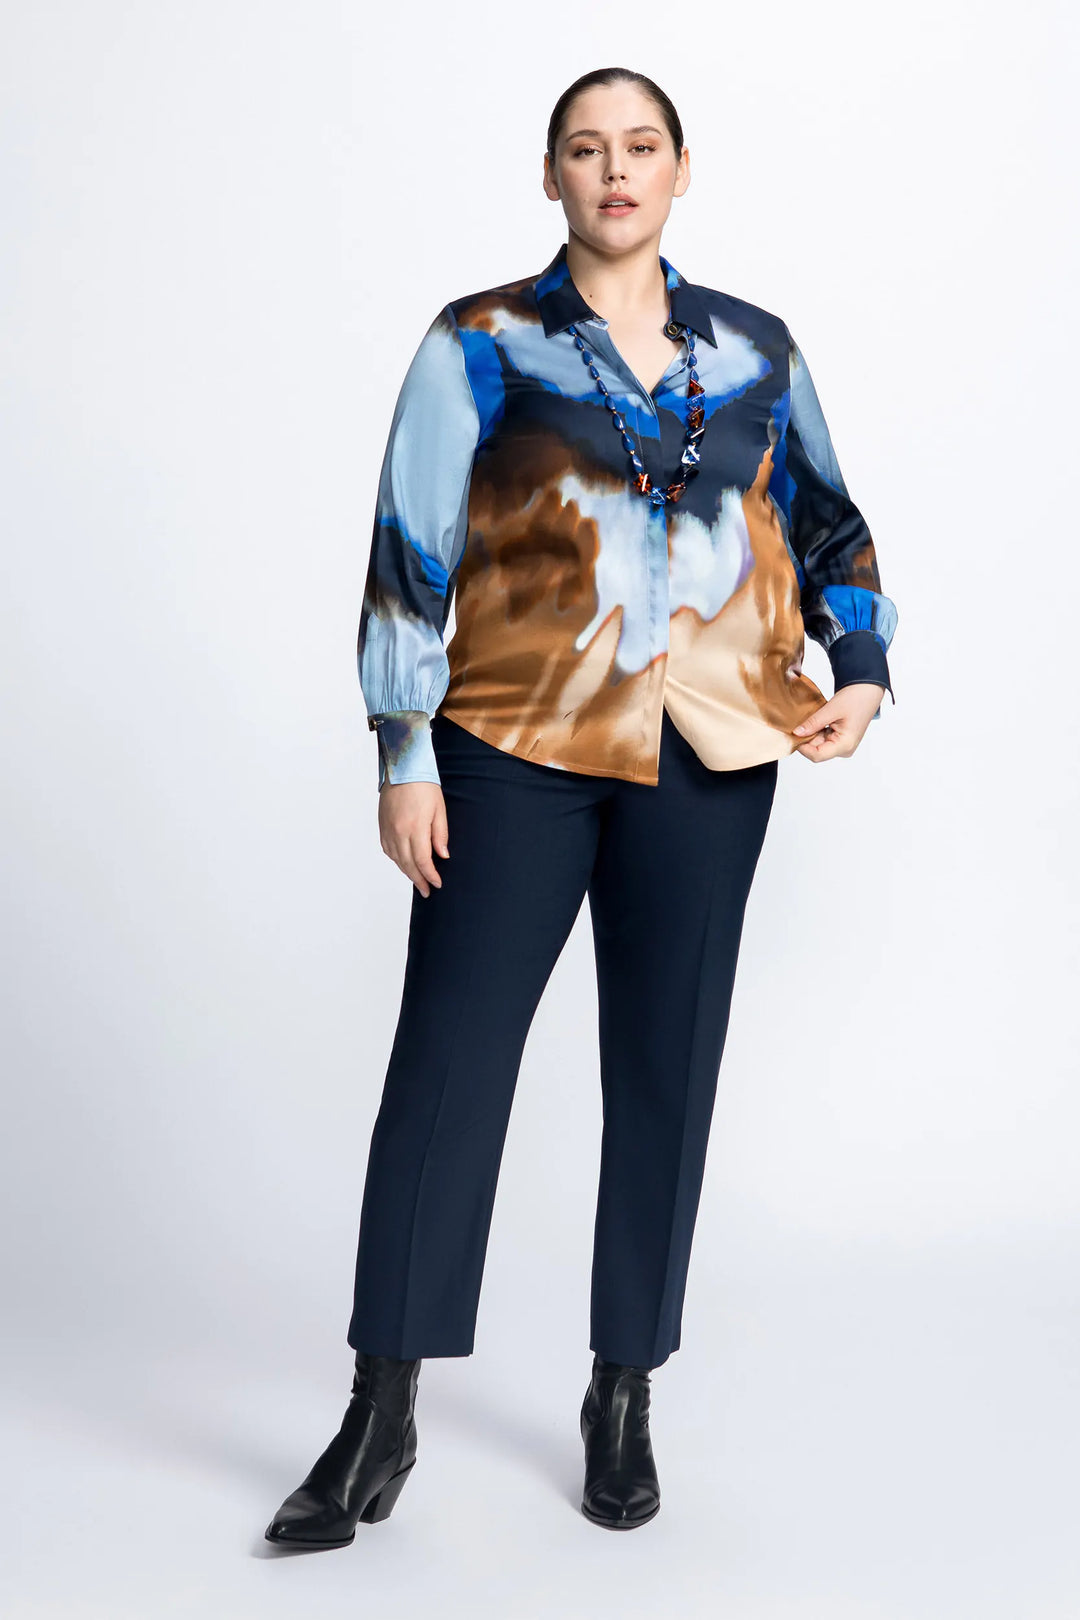 satijnen blouse met prachtige print - xandres - himio - grote maten - dameskleding - kledingwinkel - herent - leuven